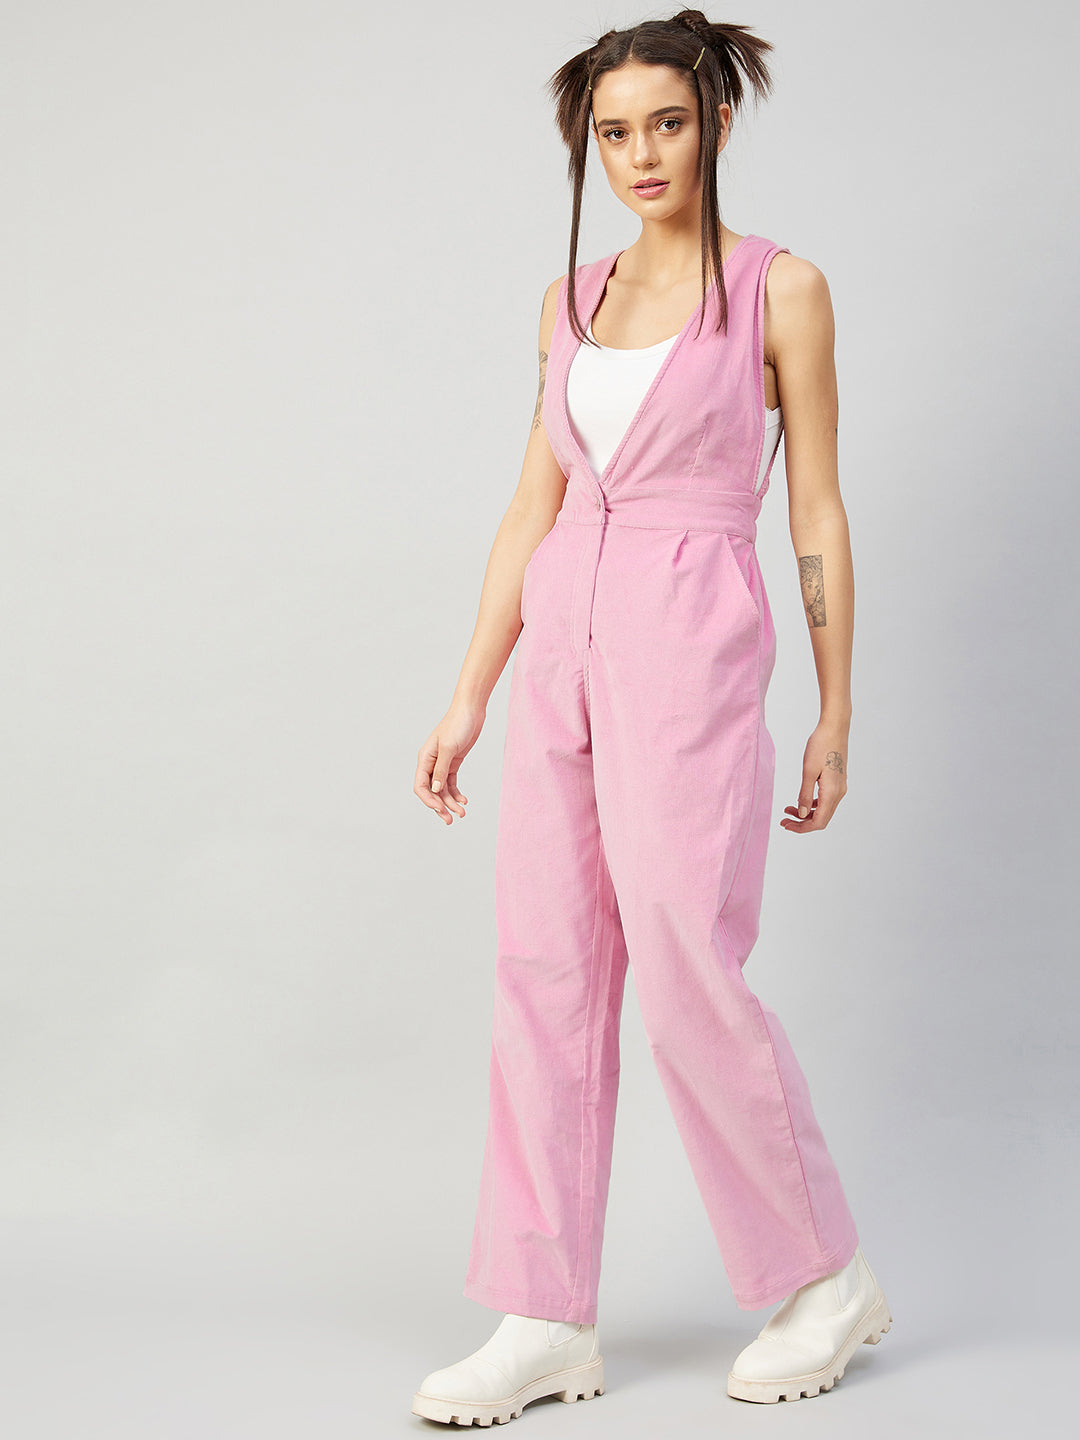 Athena Pink Codrouy Basic Jumpsuit - Athena Lifestyle